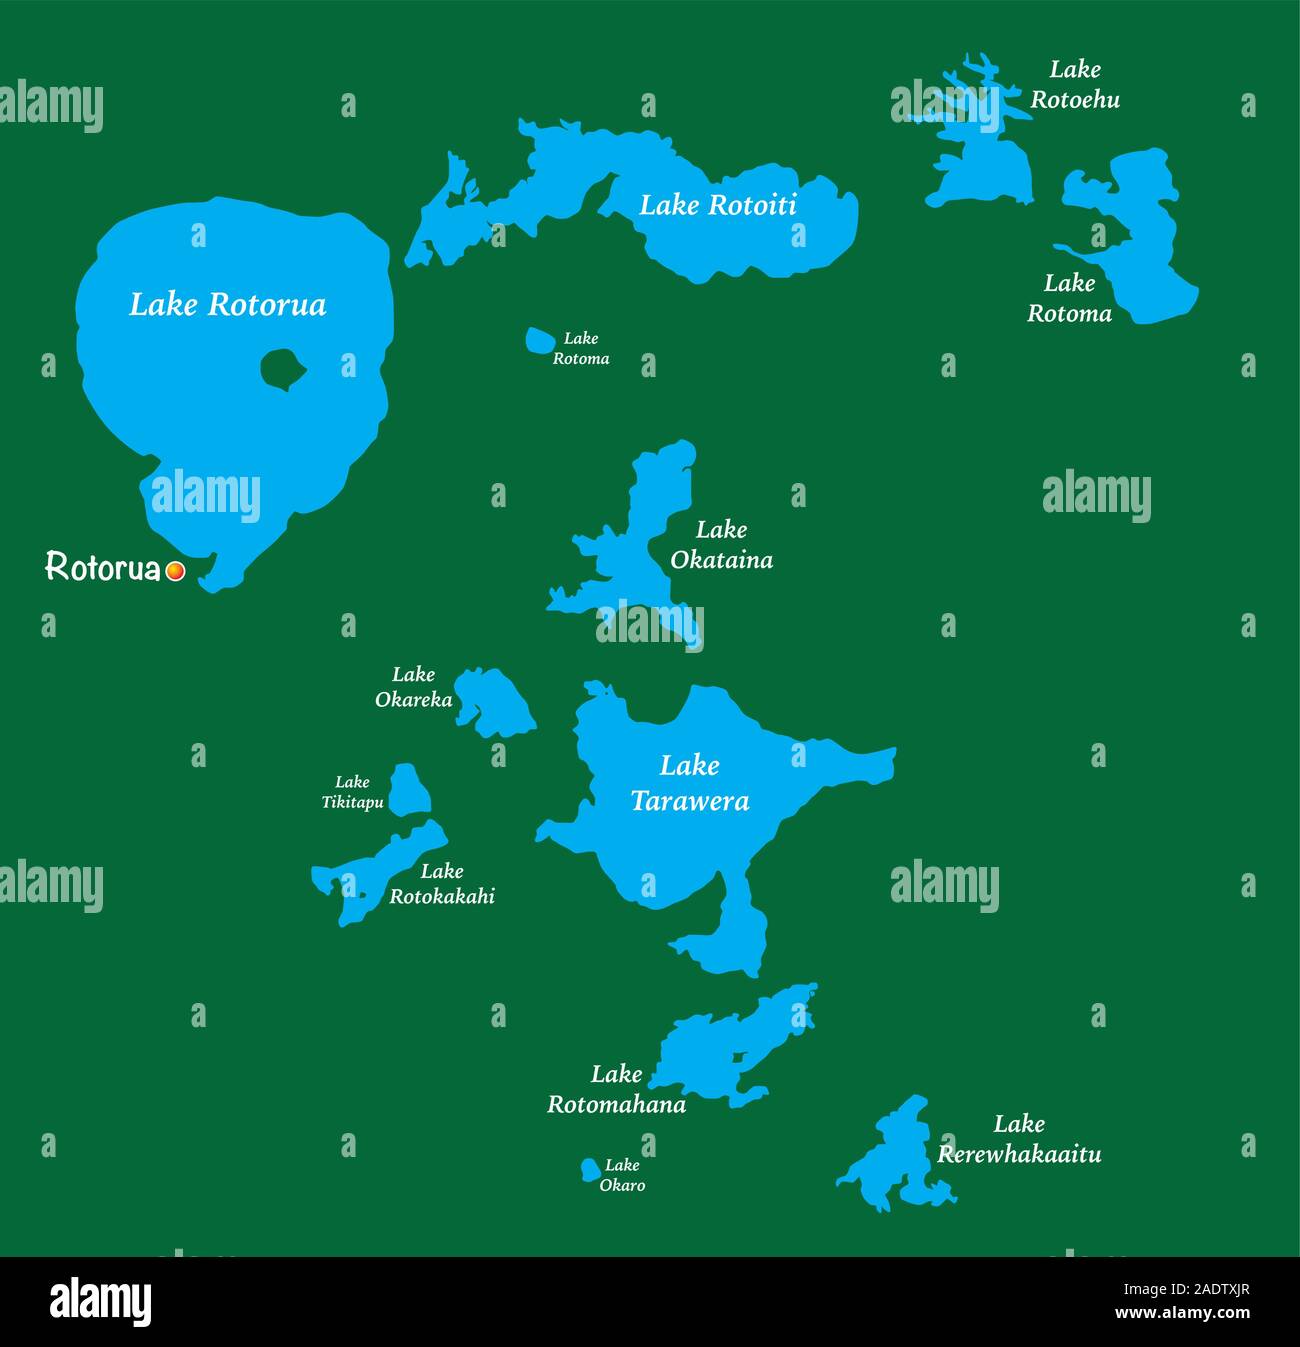 Site des lacs dans le district des lacs Rotorua sur l'île Nord de la Nouvelle-Zélande Illustration de Vecteur